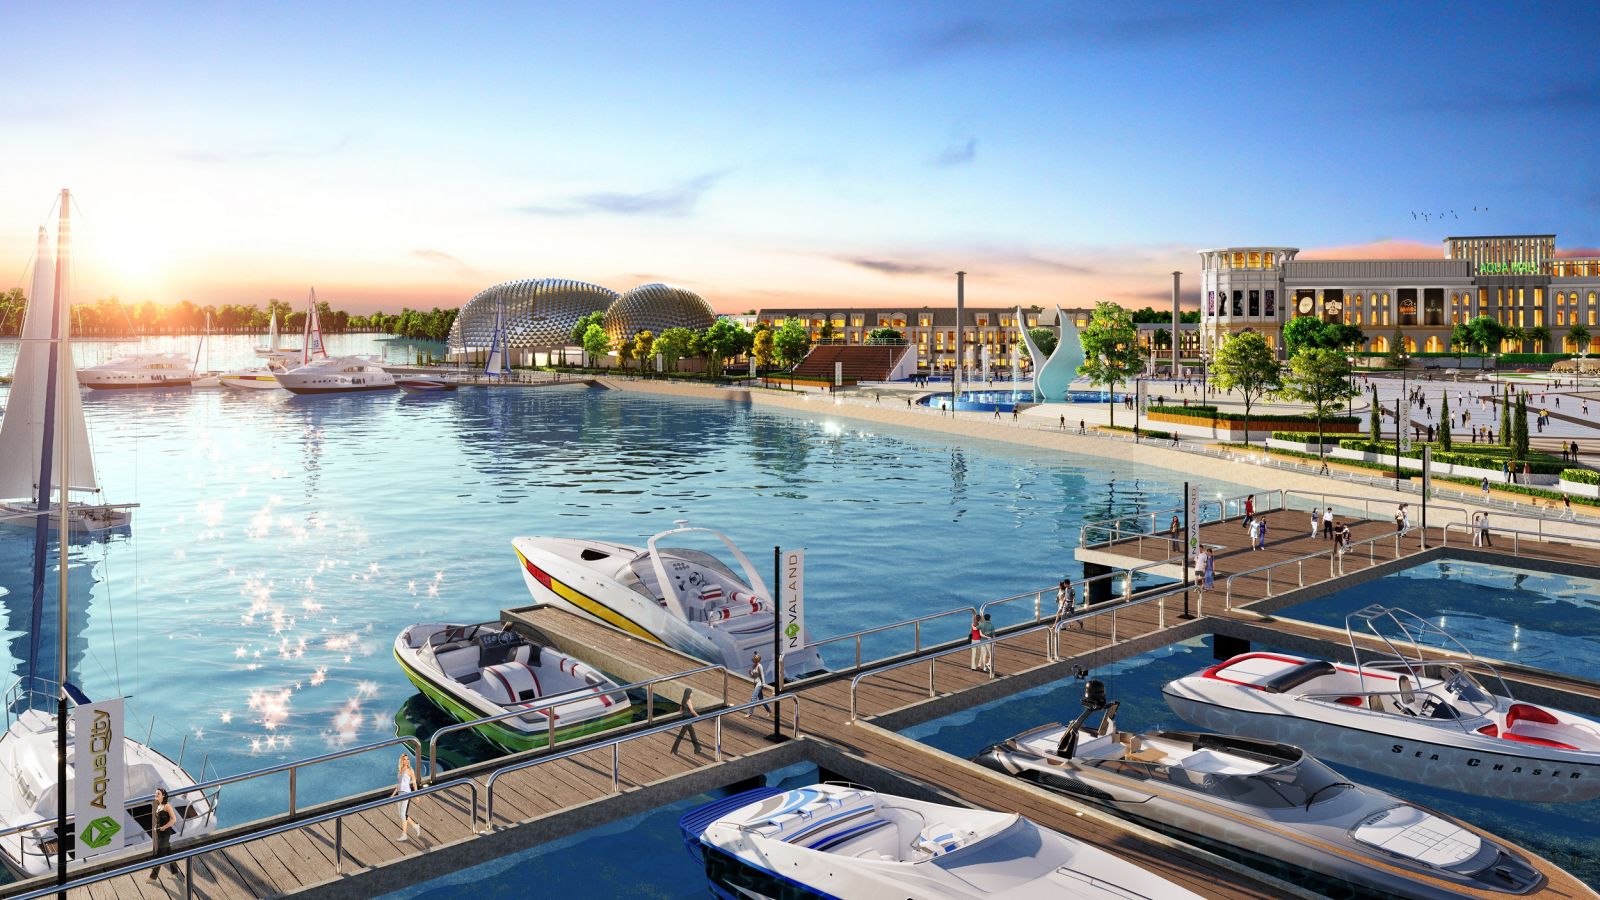 Tổ hợp Quảng trường – Bến du thuyền Aqua Marina, Aqua City tại phía Đông TP HCM